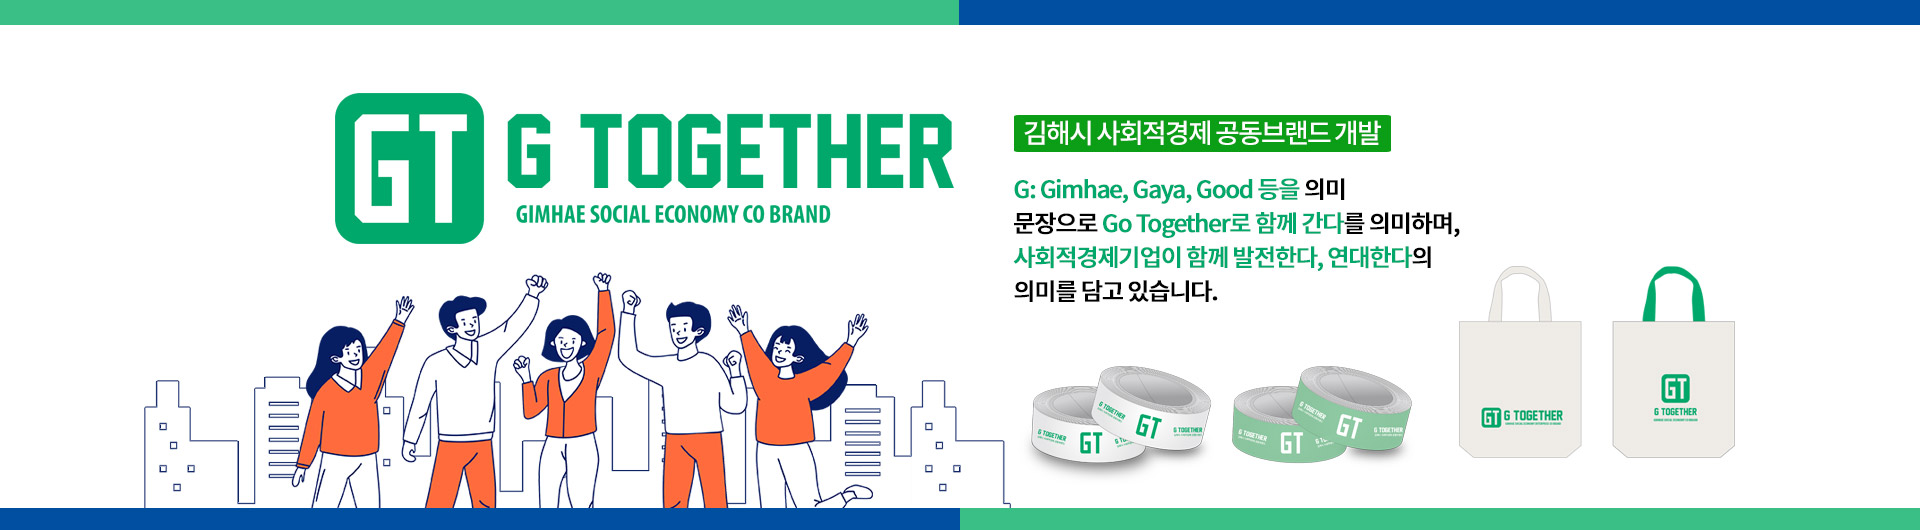 김해시 사회적경제 공동브랜드 개발
G: Gimhae, Gaya, Good 등을 의미
문장으로 Go Together로 함께 간다를 의미하며,
사회적경제기업이 함께 발전한다, 연대한다의 의미를 담고 있습니다.
GT G TOGETHER GIMHAE SOCIAL ECONOMY CO BRAND